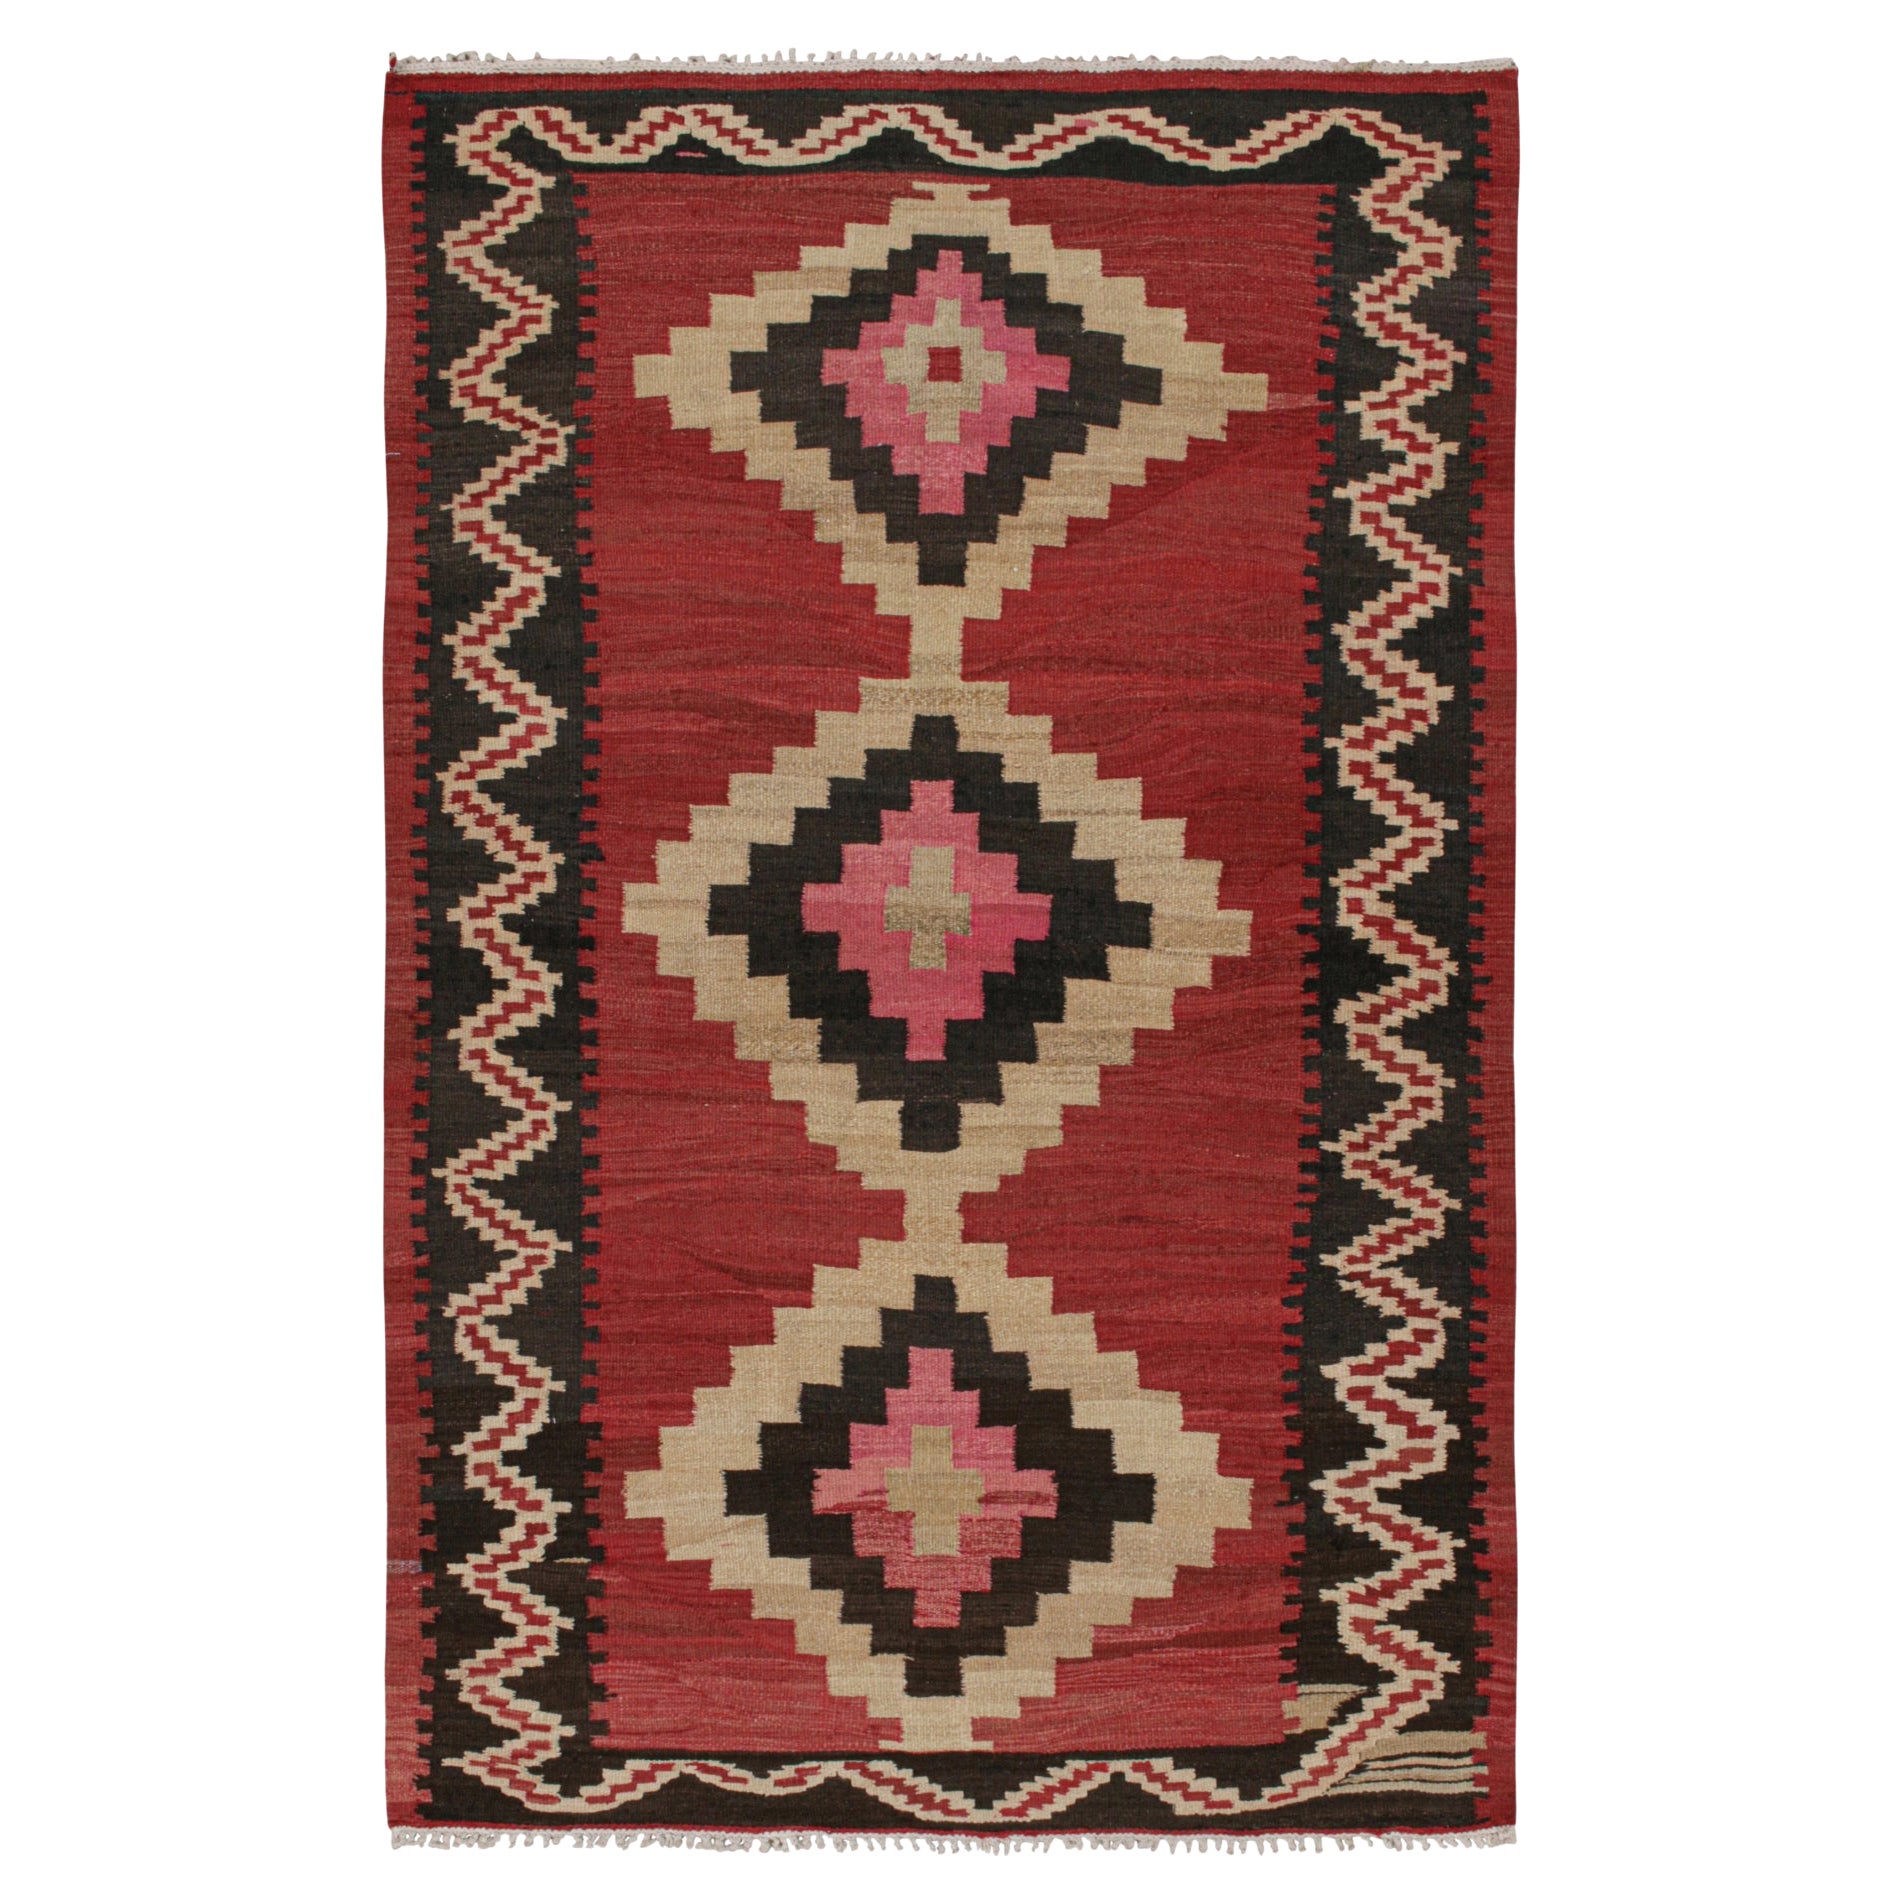 Tapis et Kilim persan Shahsavan vintage à motifs rouges, beiges et noirs